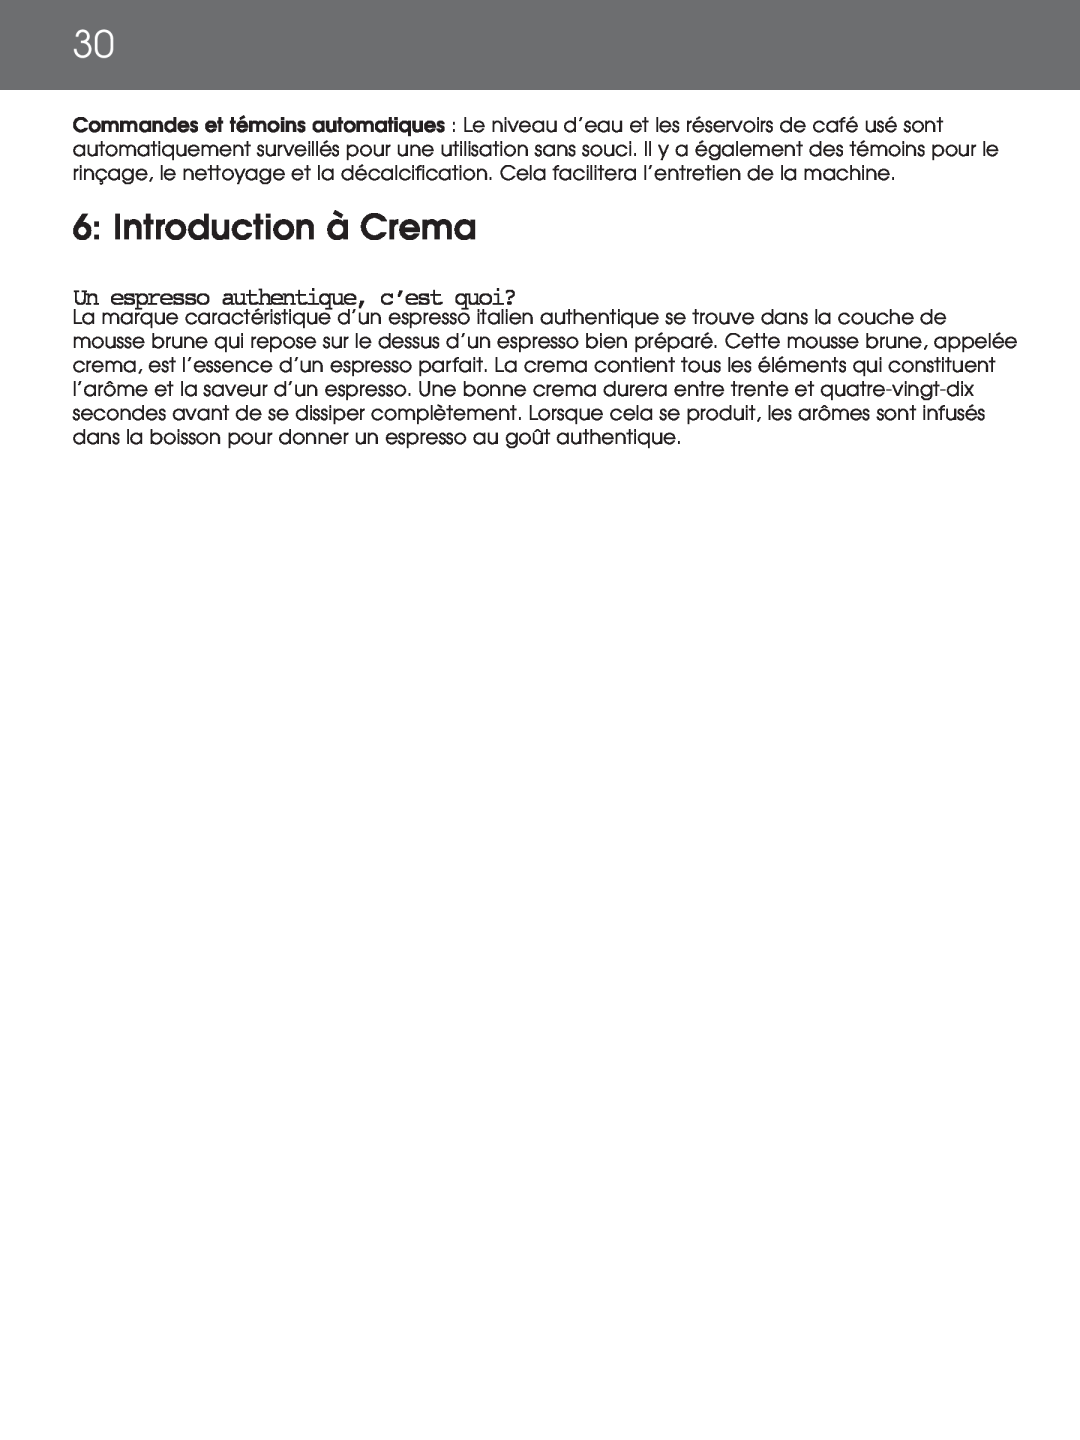 DeLonghi EAM4000 instruction manual 6: Introduction à Crema, Un espresso authentique, c’est quoi? 